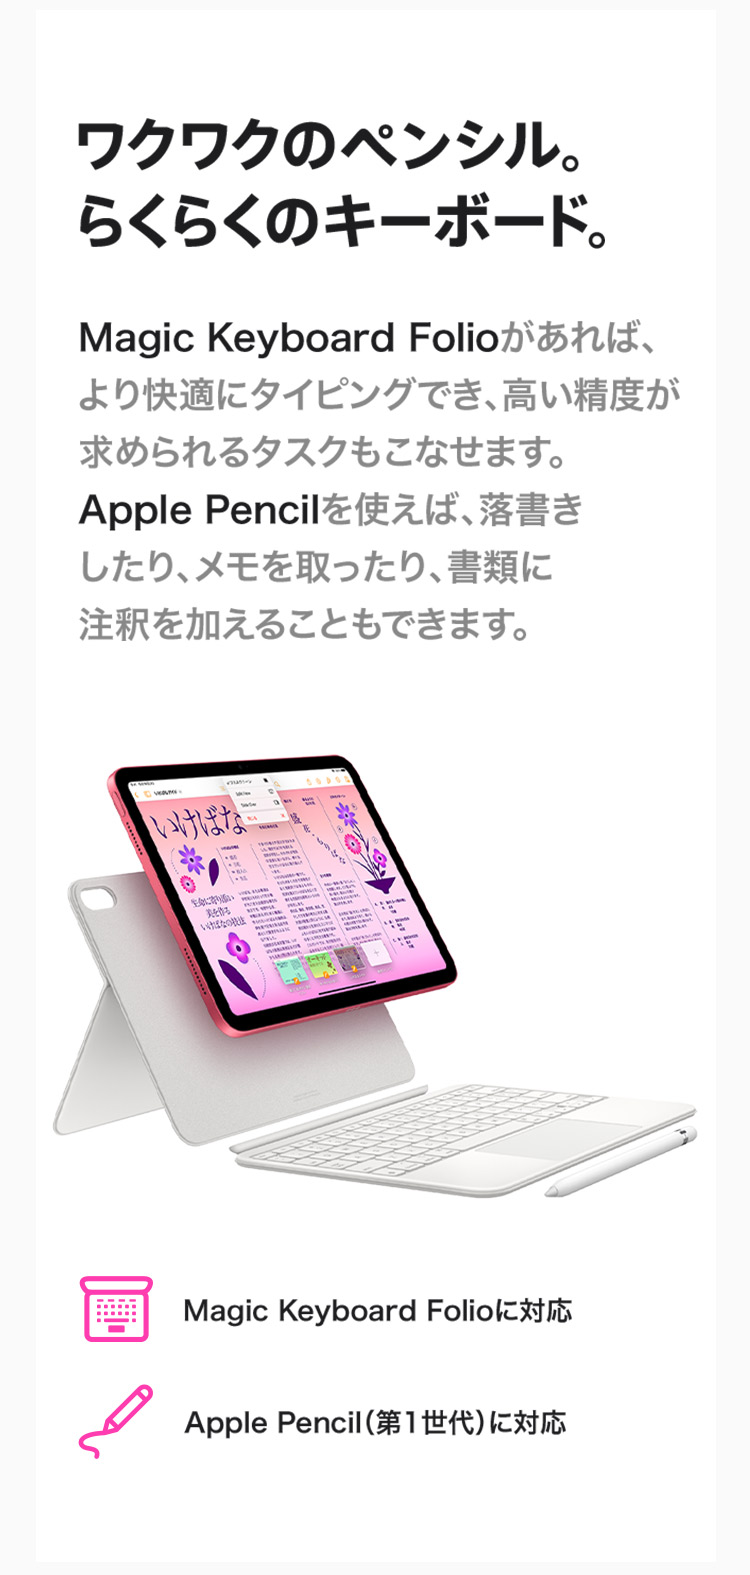 ワクワクのペンシル。らくらくのキーボード。Magic Keyboard Folioがあれば、より快適にタイピングでき、高い精度が求められるタスクもこなせます。Apple Pencilを使えば、落書きしたり、メモを取ったり、書類に注釈を加えることもできます。